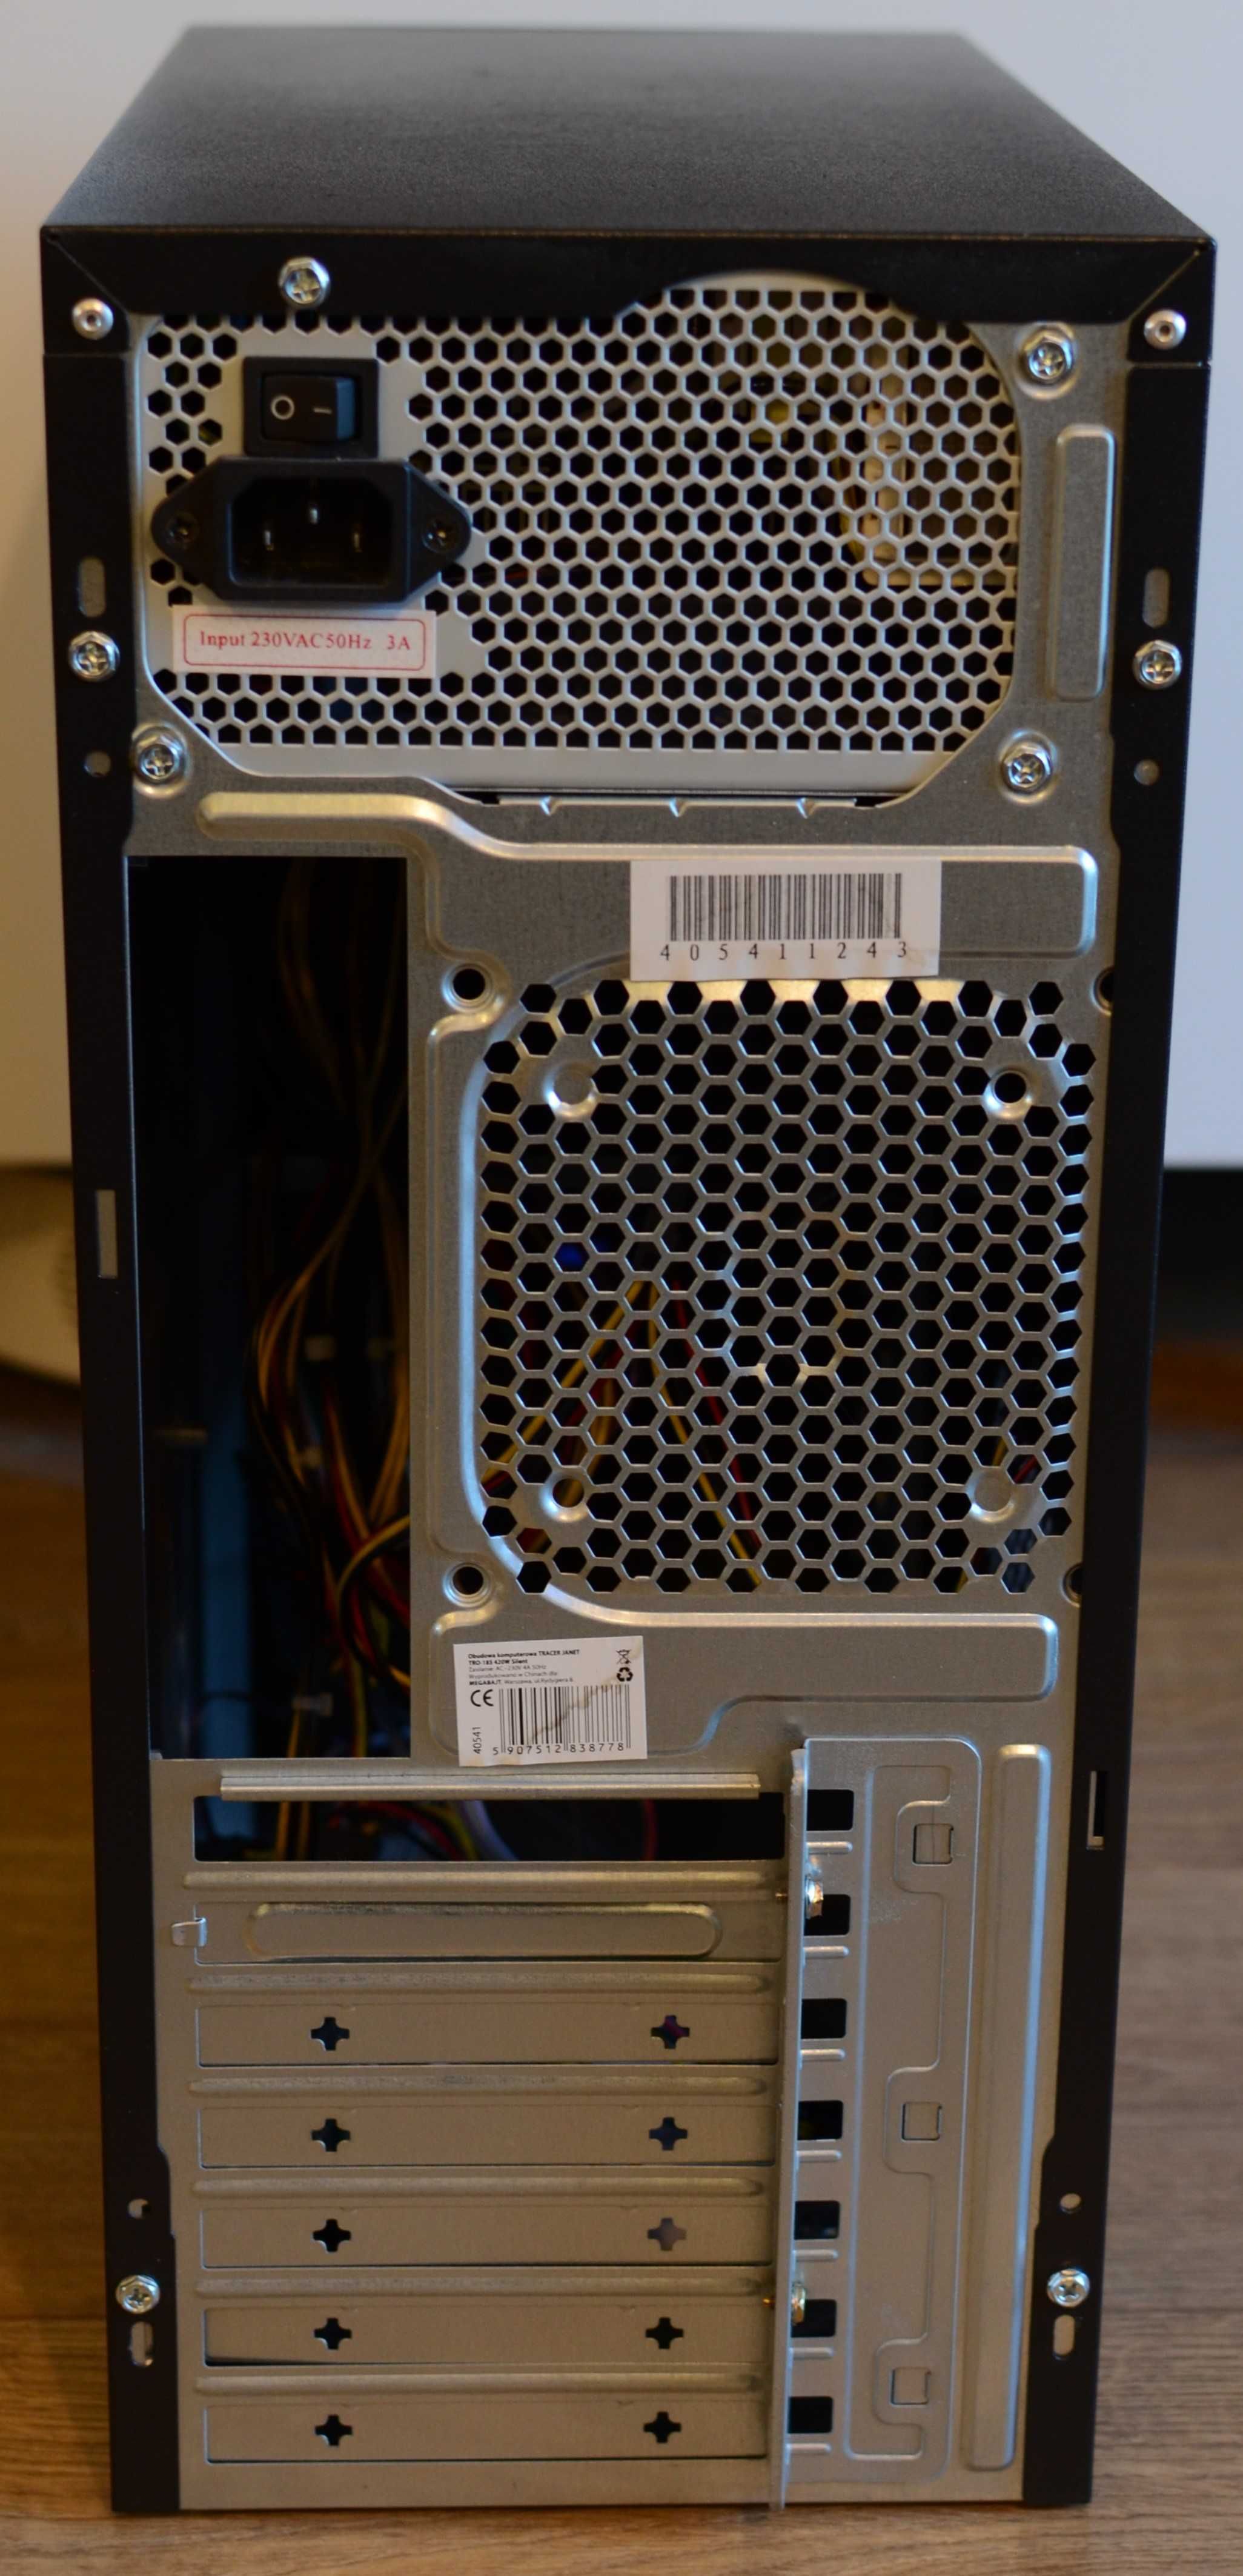 Obudowa komputerowa ATX z zasilaczem 420W